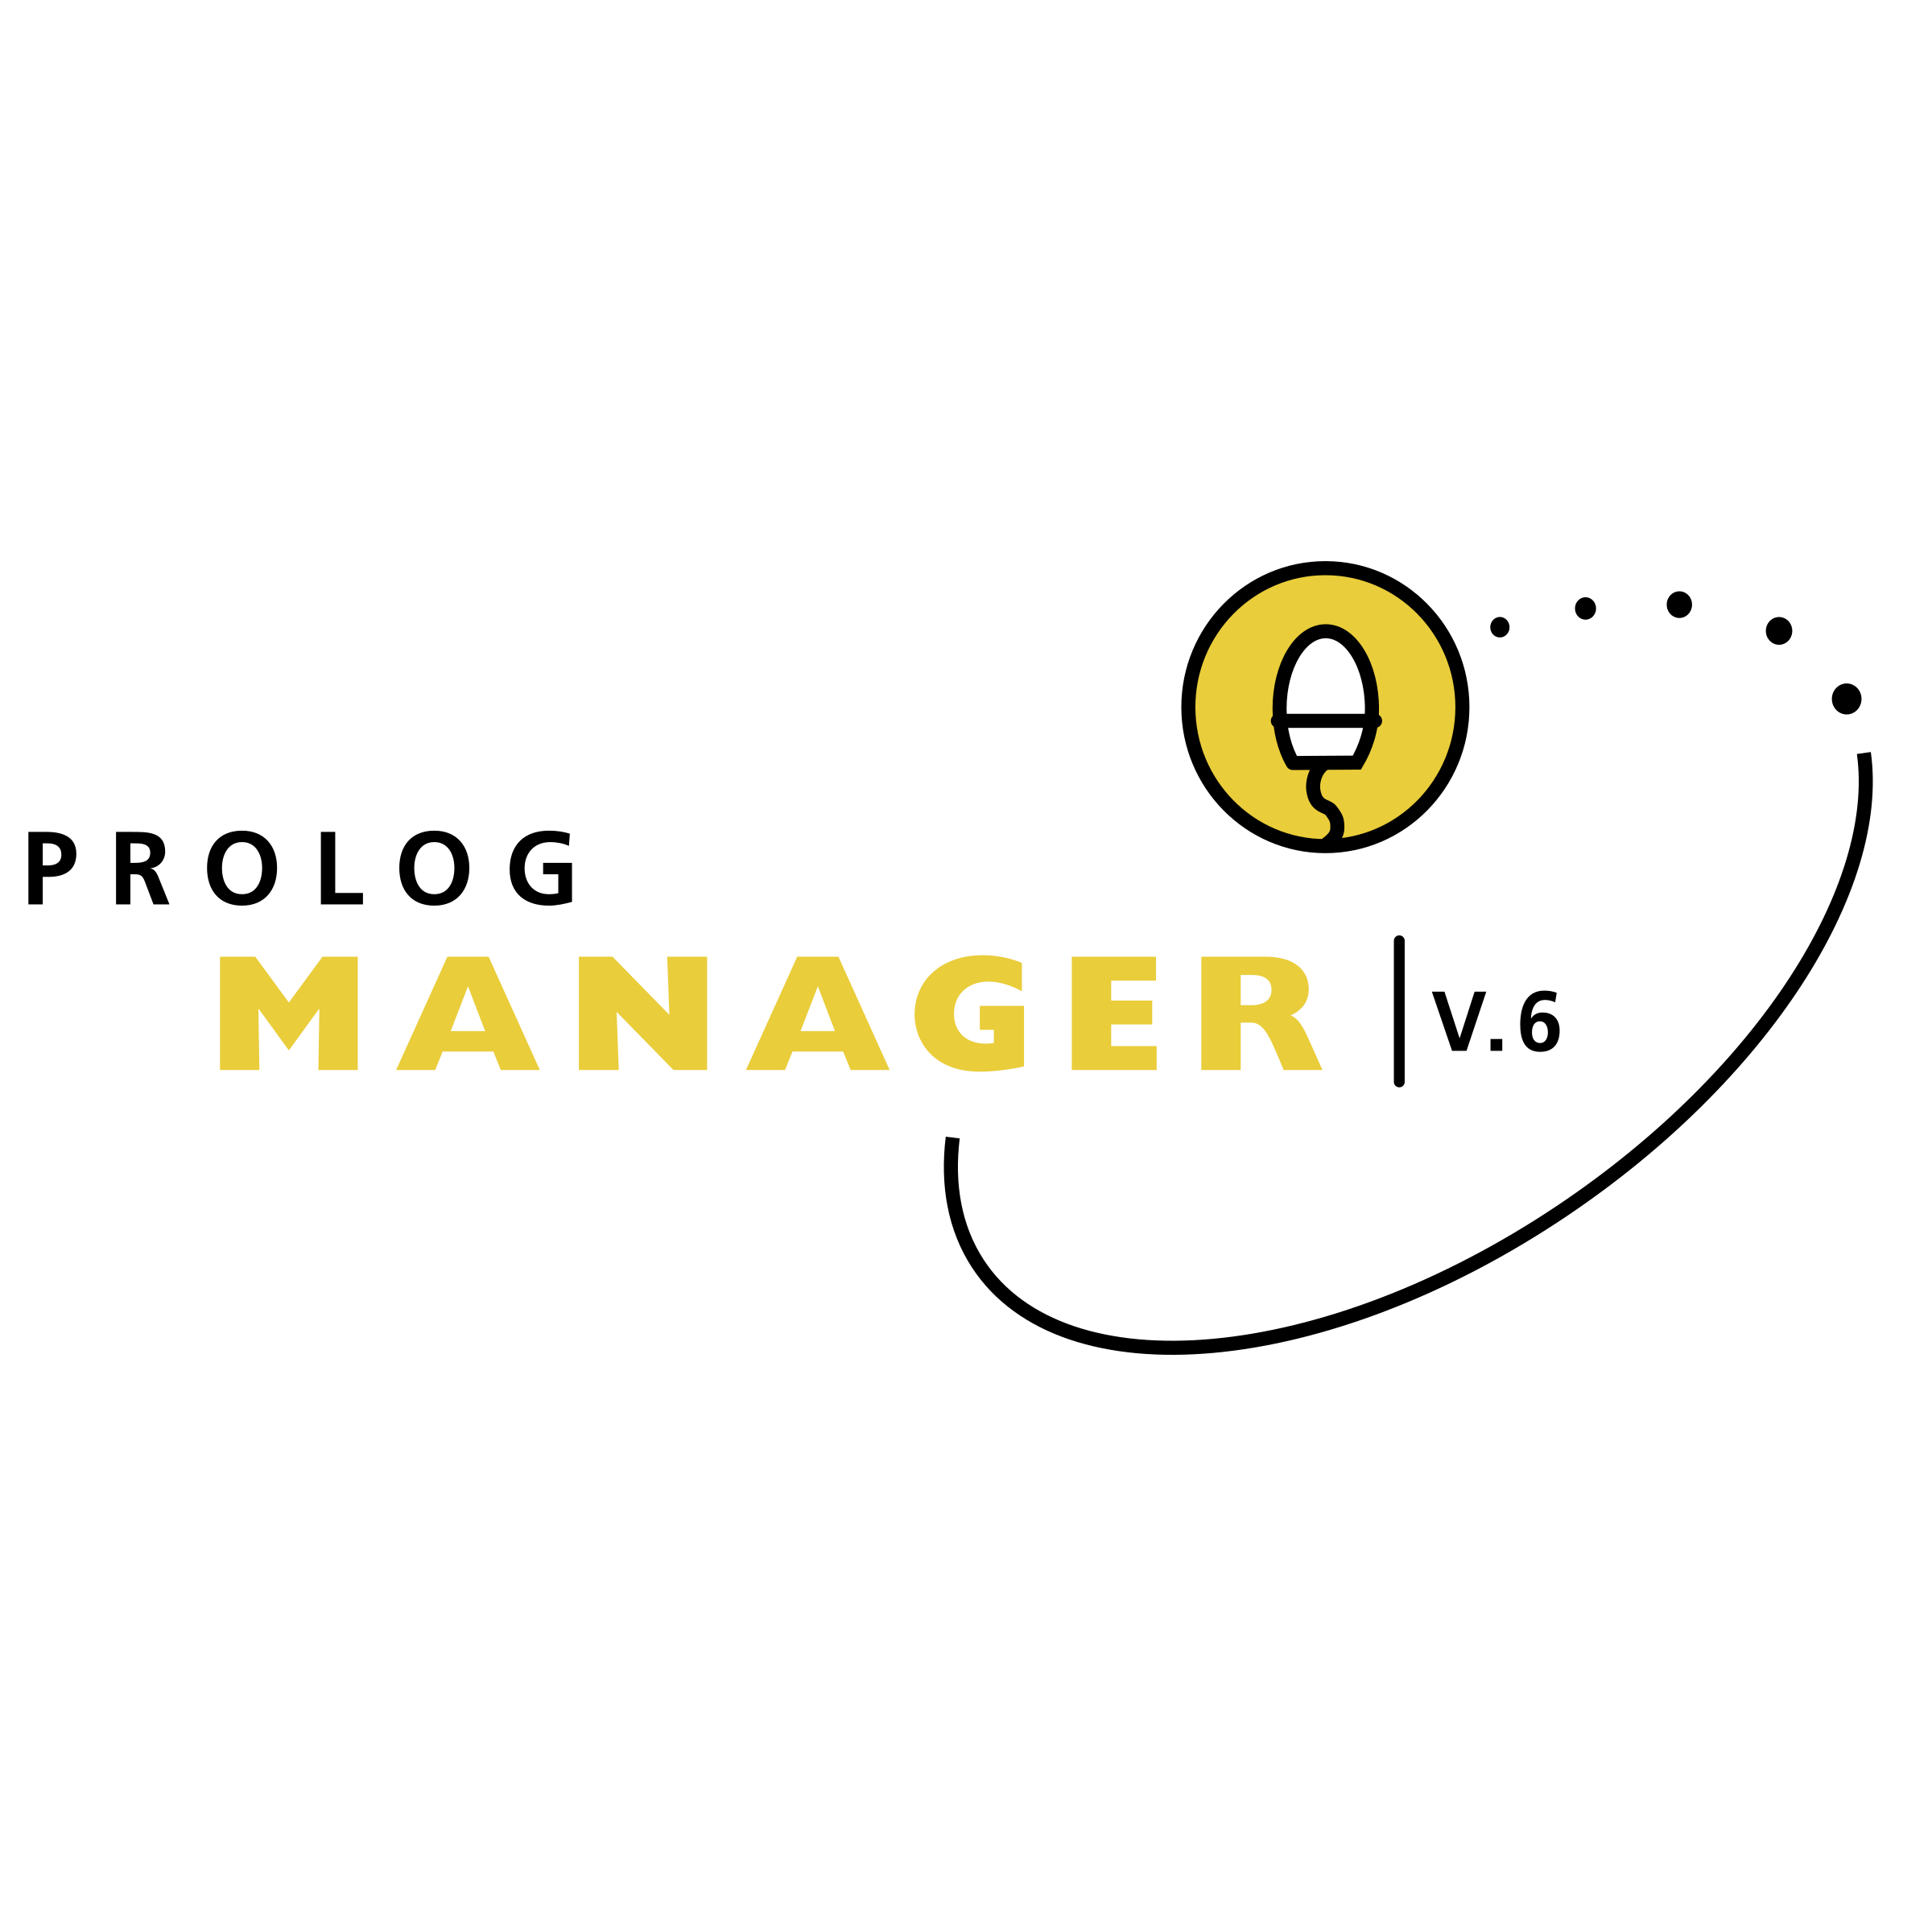 Prolog Logo - Prolog Manager Logo PNG Transparent & SVG Vector - Freebie Supply